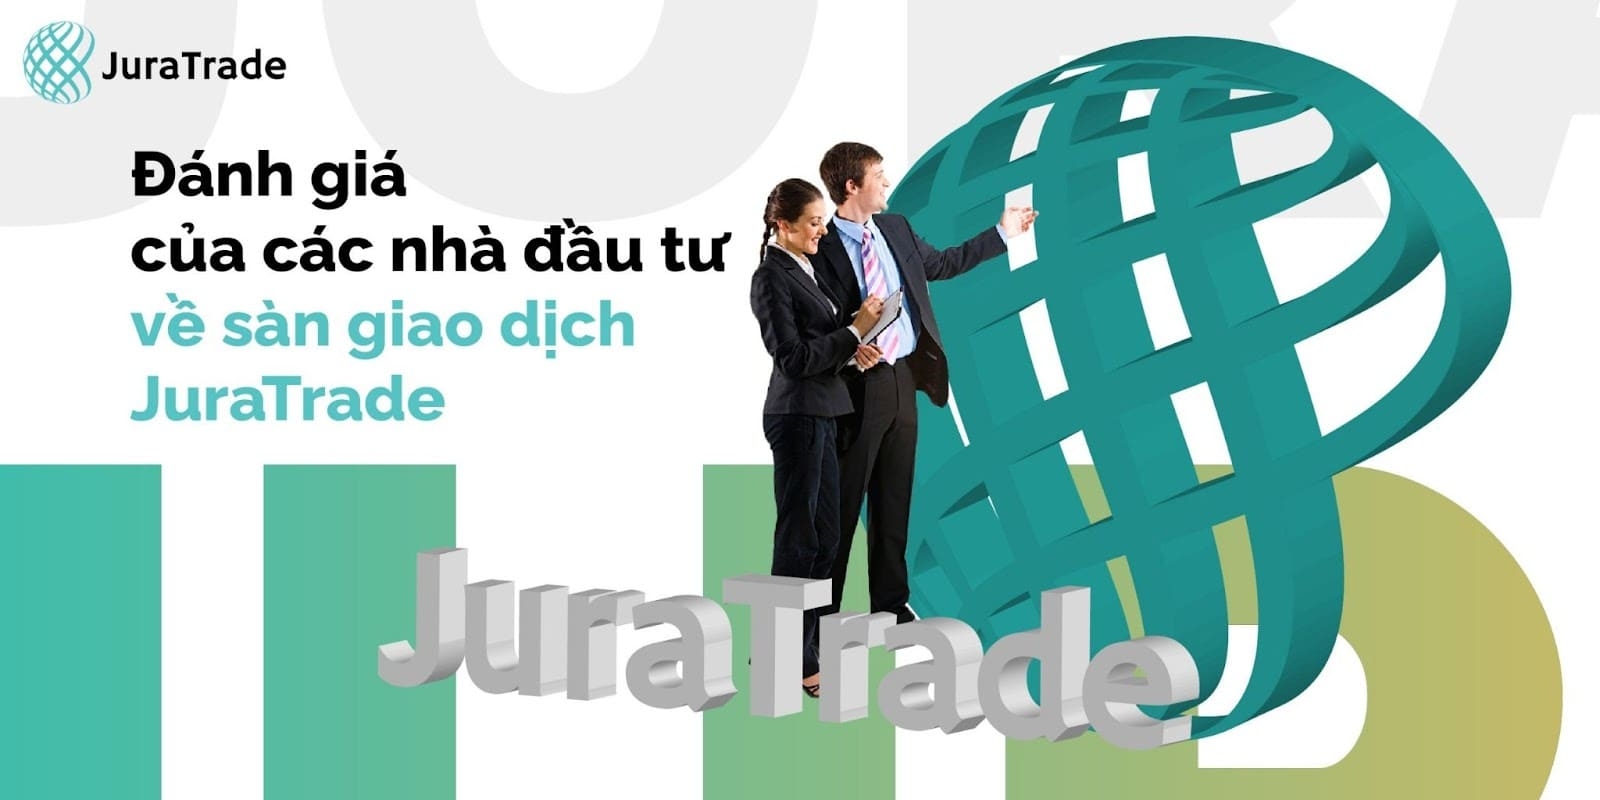 Đánh giá của các nhà đầu tư về sàn giao dịch JuraTrade